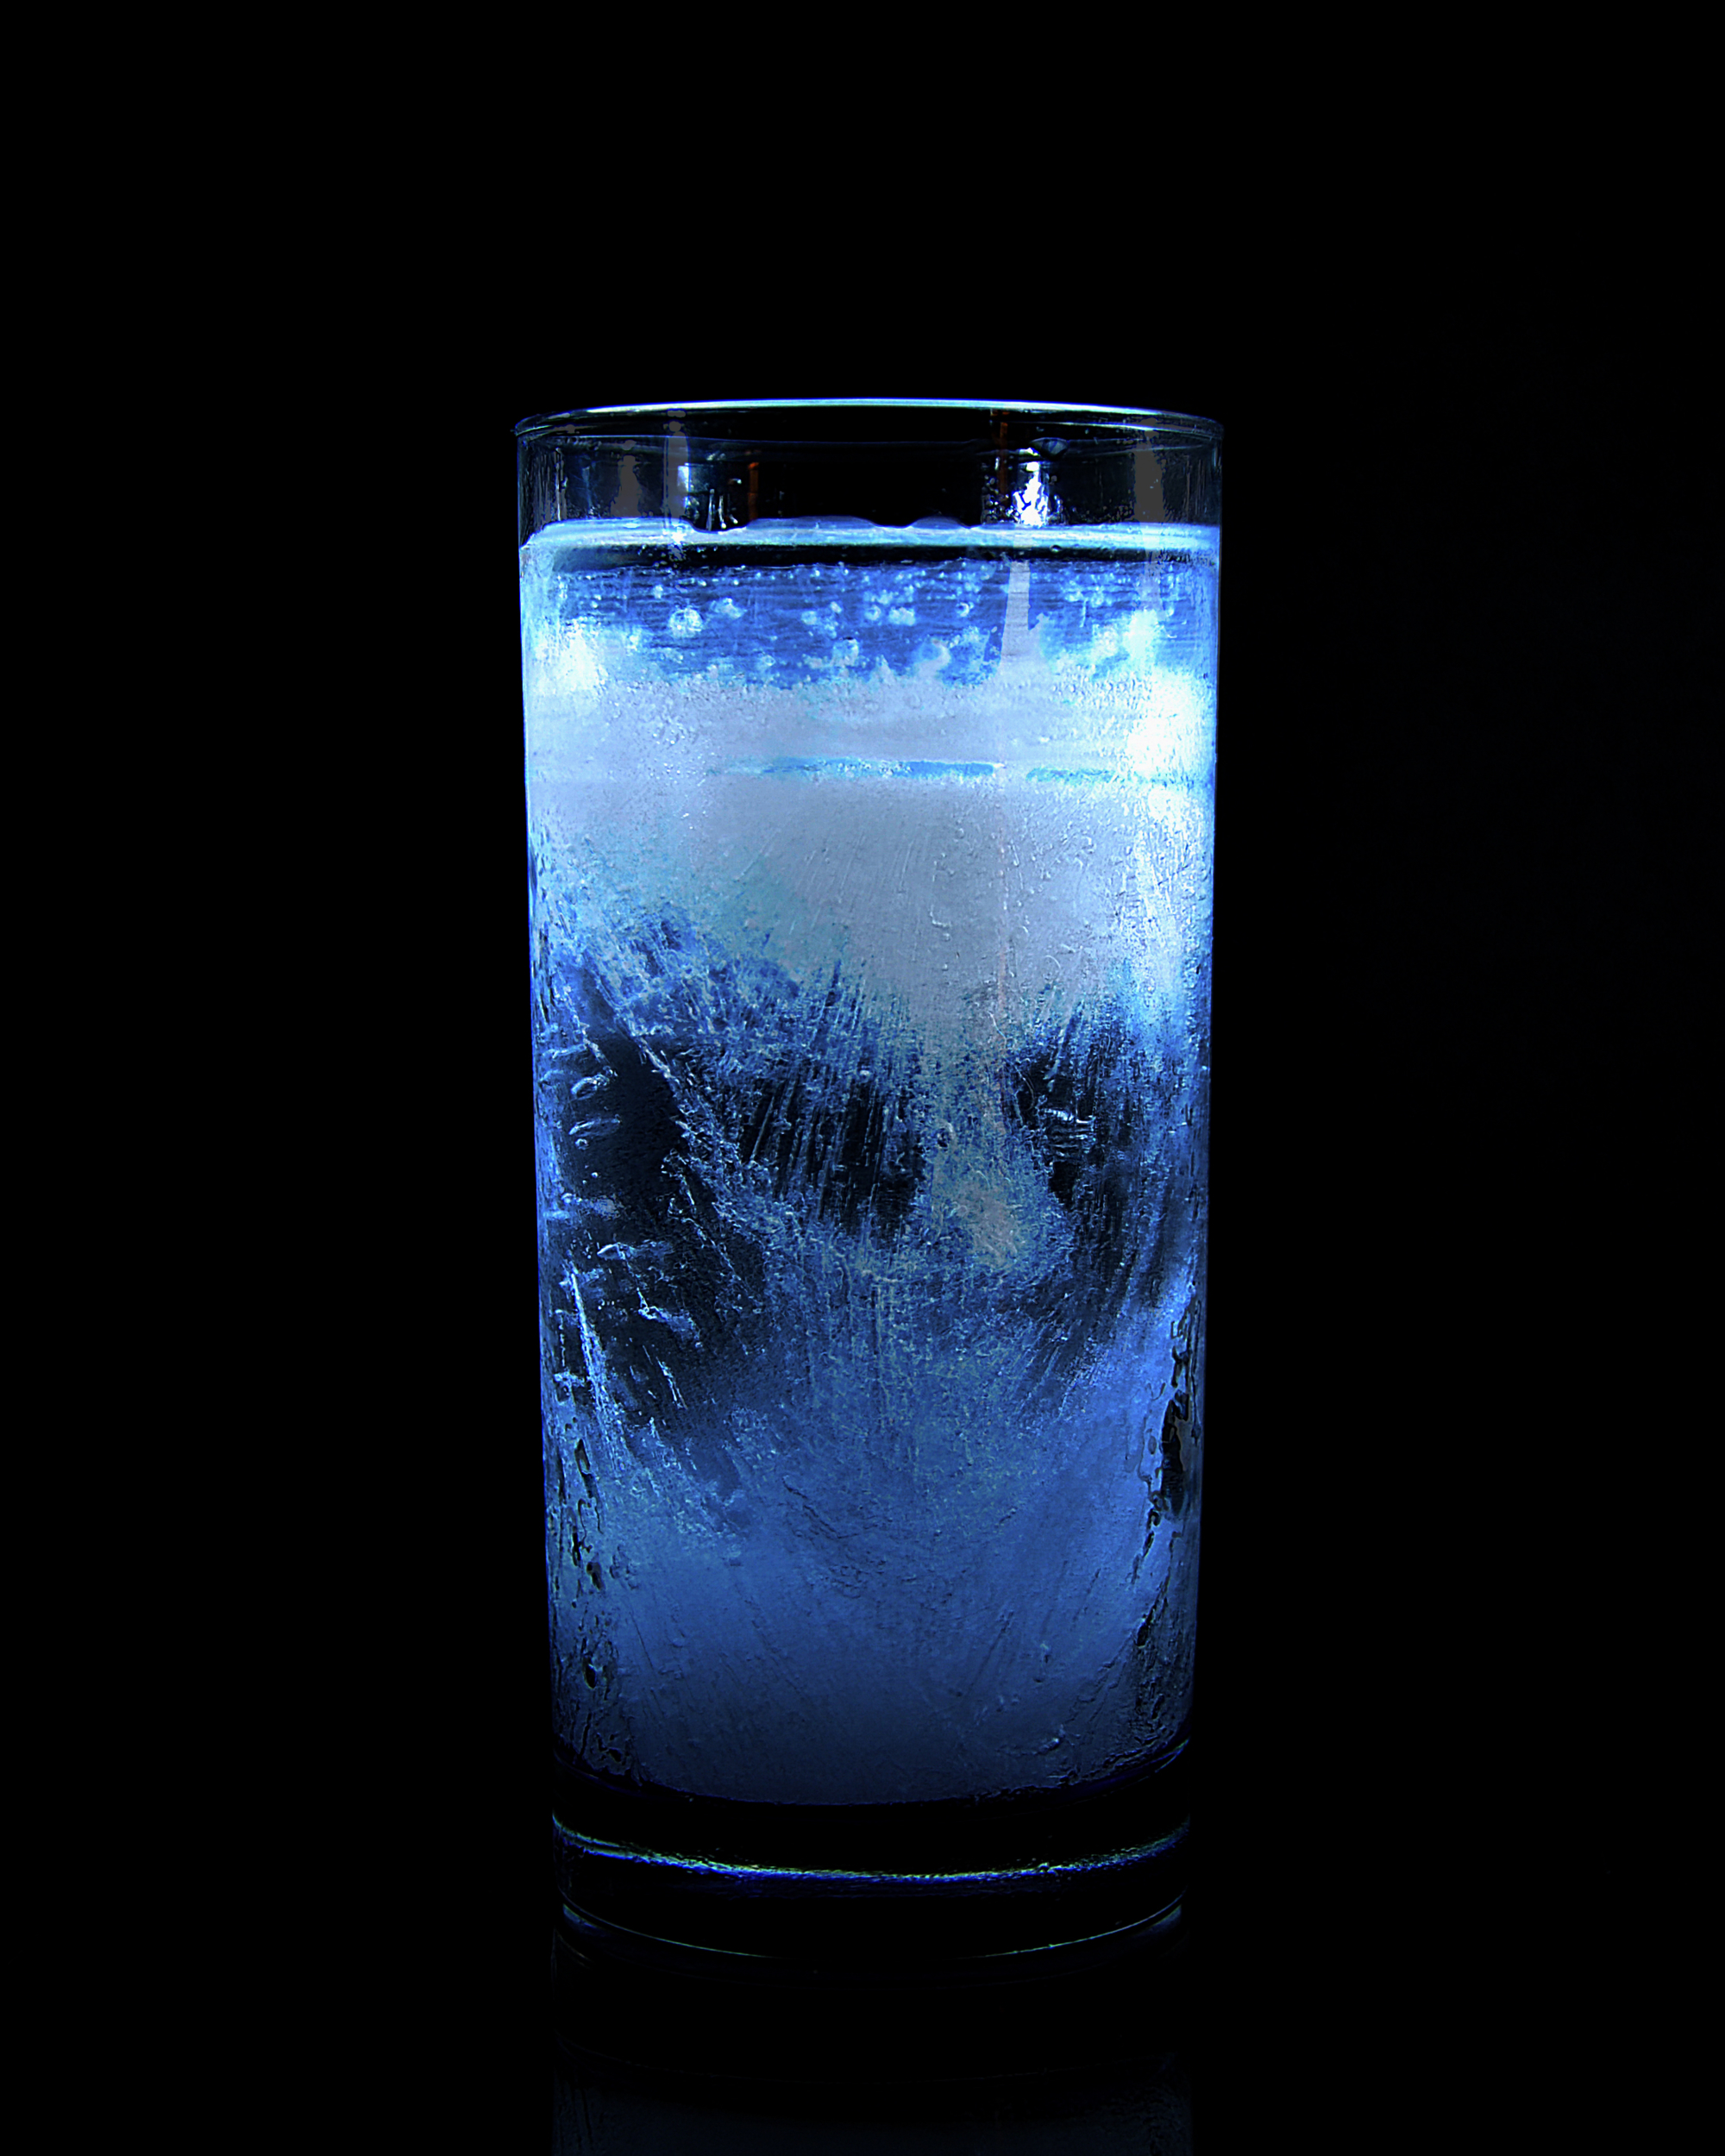 Метаморфоза воды. Вымораживание воды. Замороженная вода в стакане. Лед картинки. Метаморфозы воды.